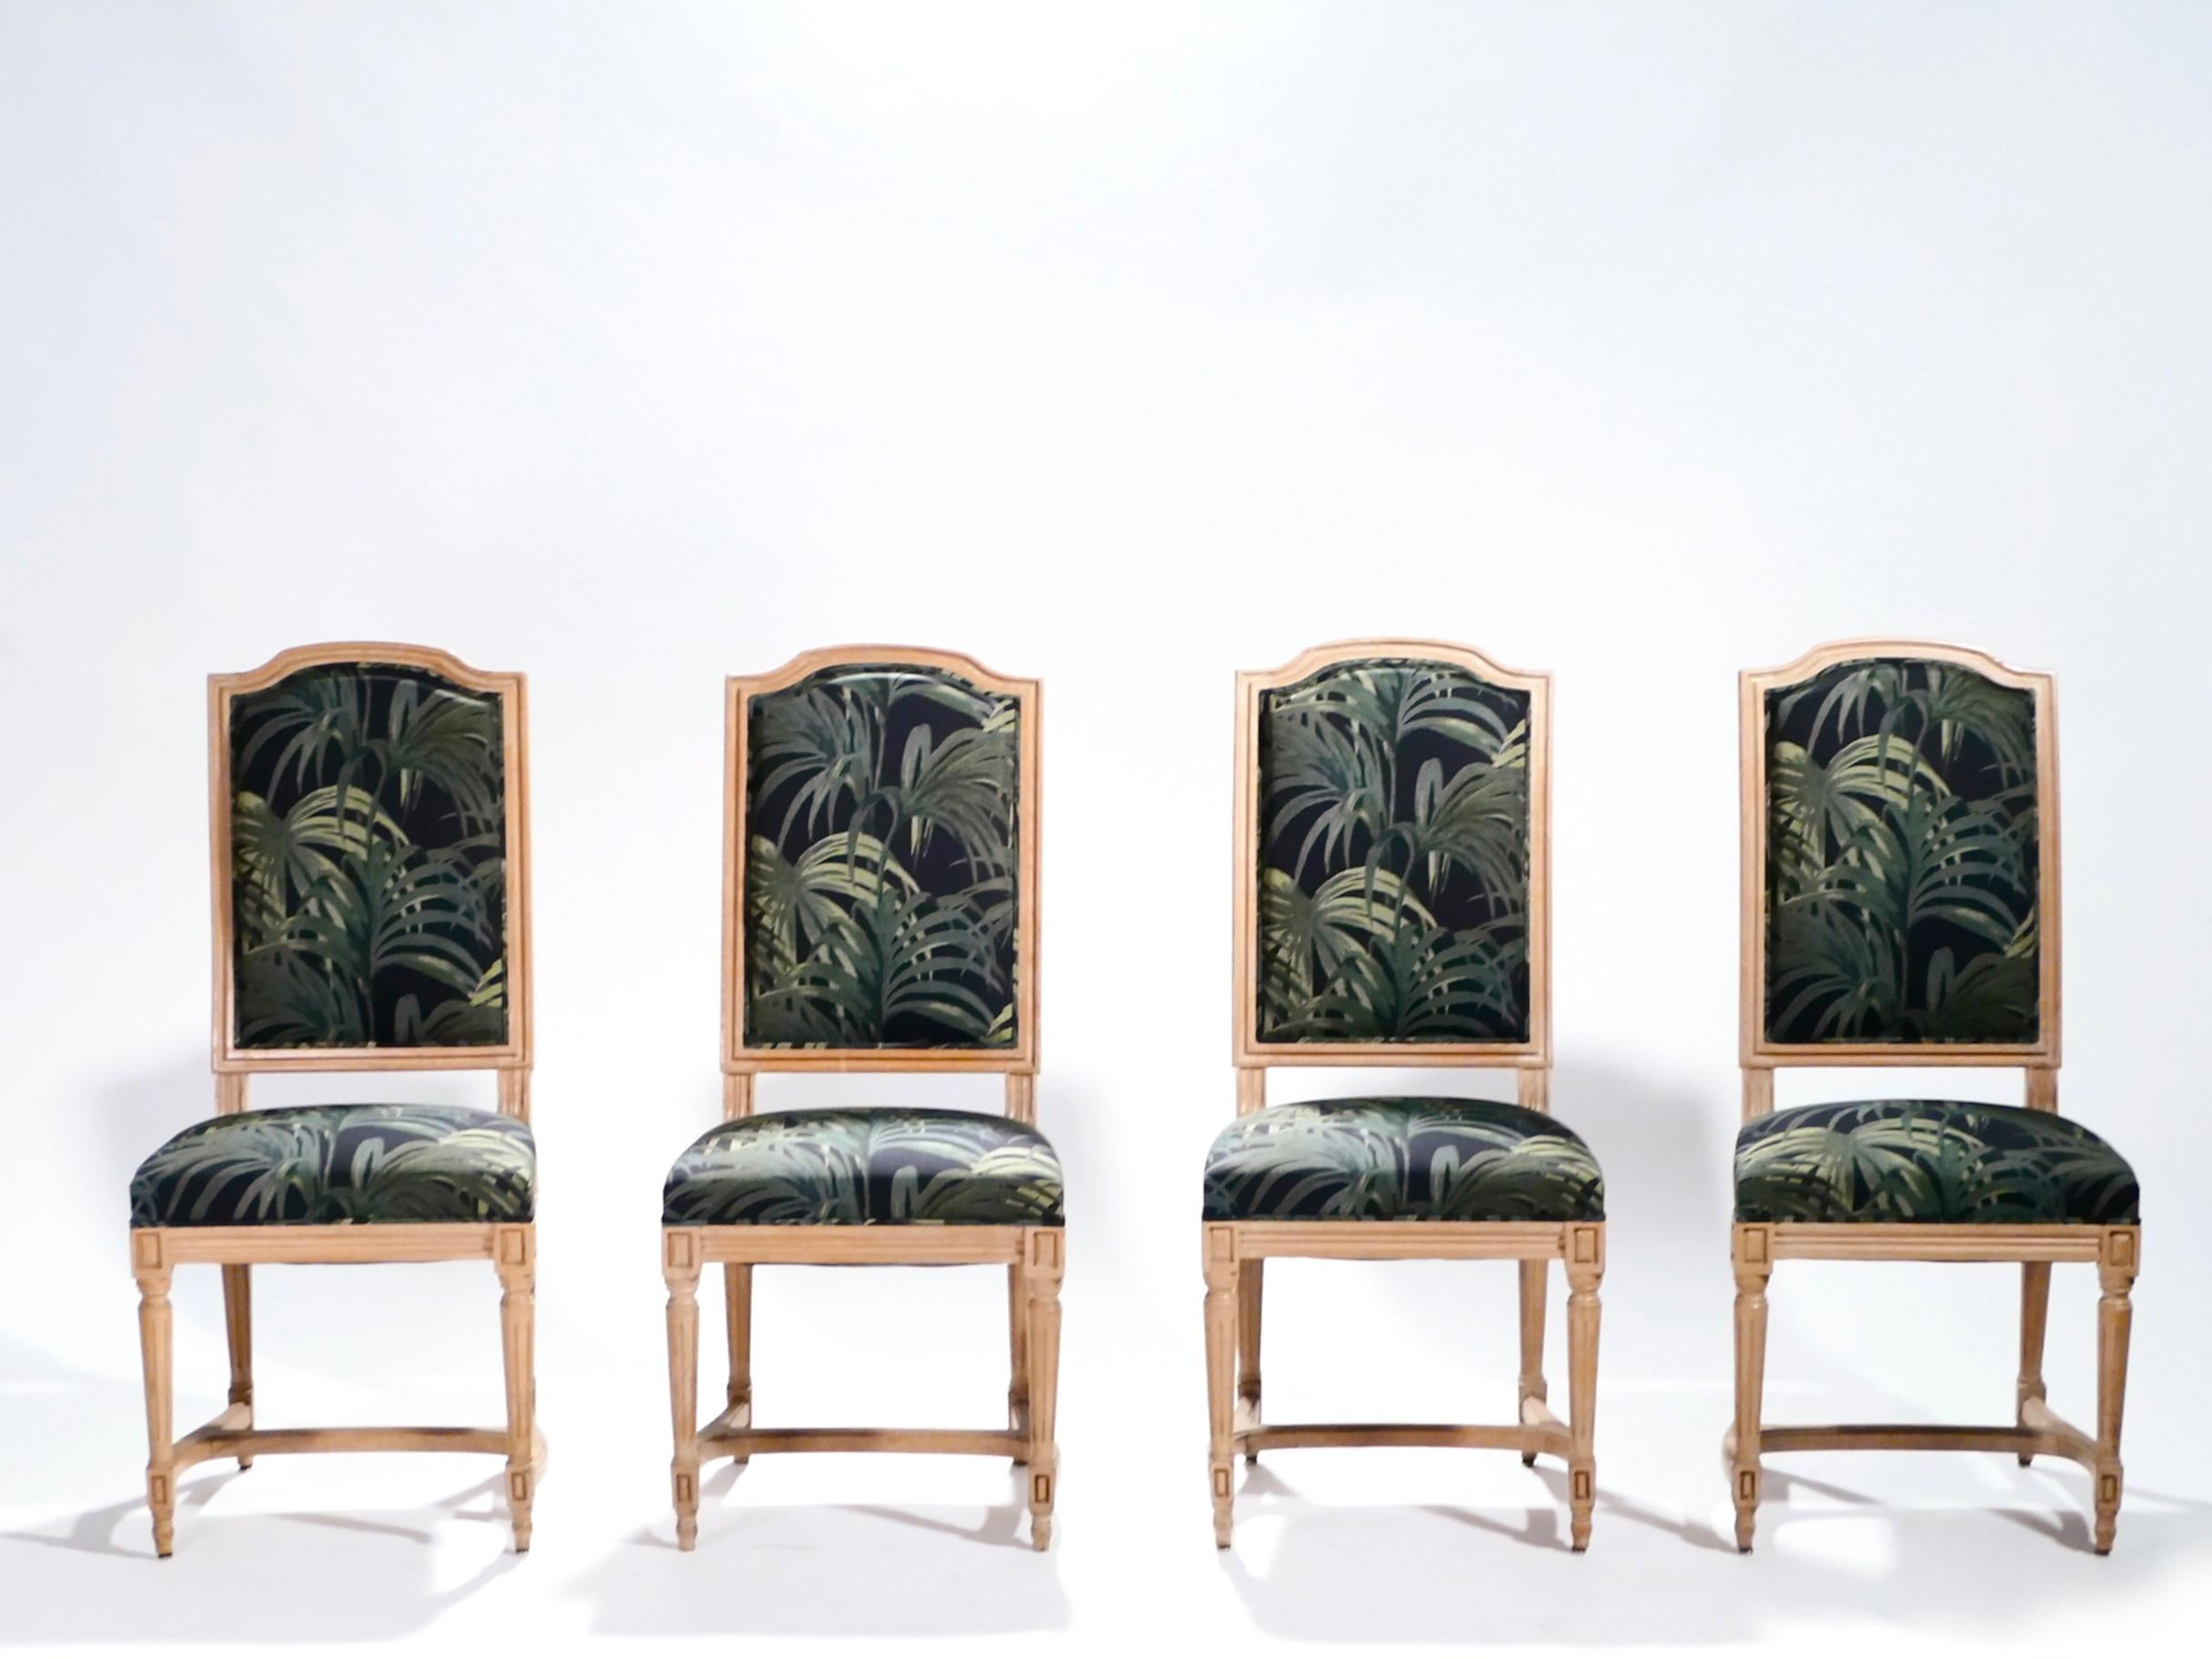 Die neue, farbenfrohe Polsterung bildet einen großartigen Kontrast zu der schönen alten Eiche dieser Stühle. Die schöne Patina, die sich an den Eichenfüßen und der Struktur zeigt, reicht aus, um das halbe Jahrhundert Geschichte in diesem Set zu